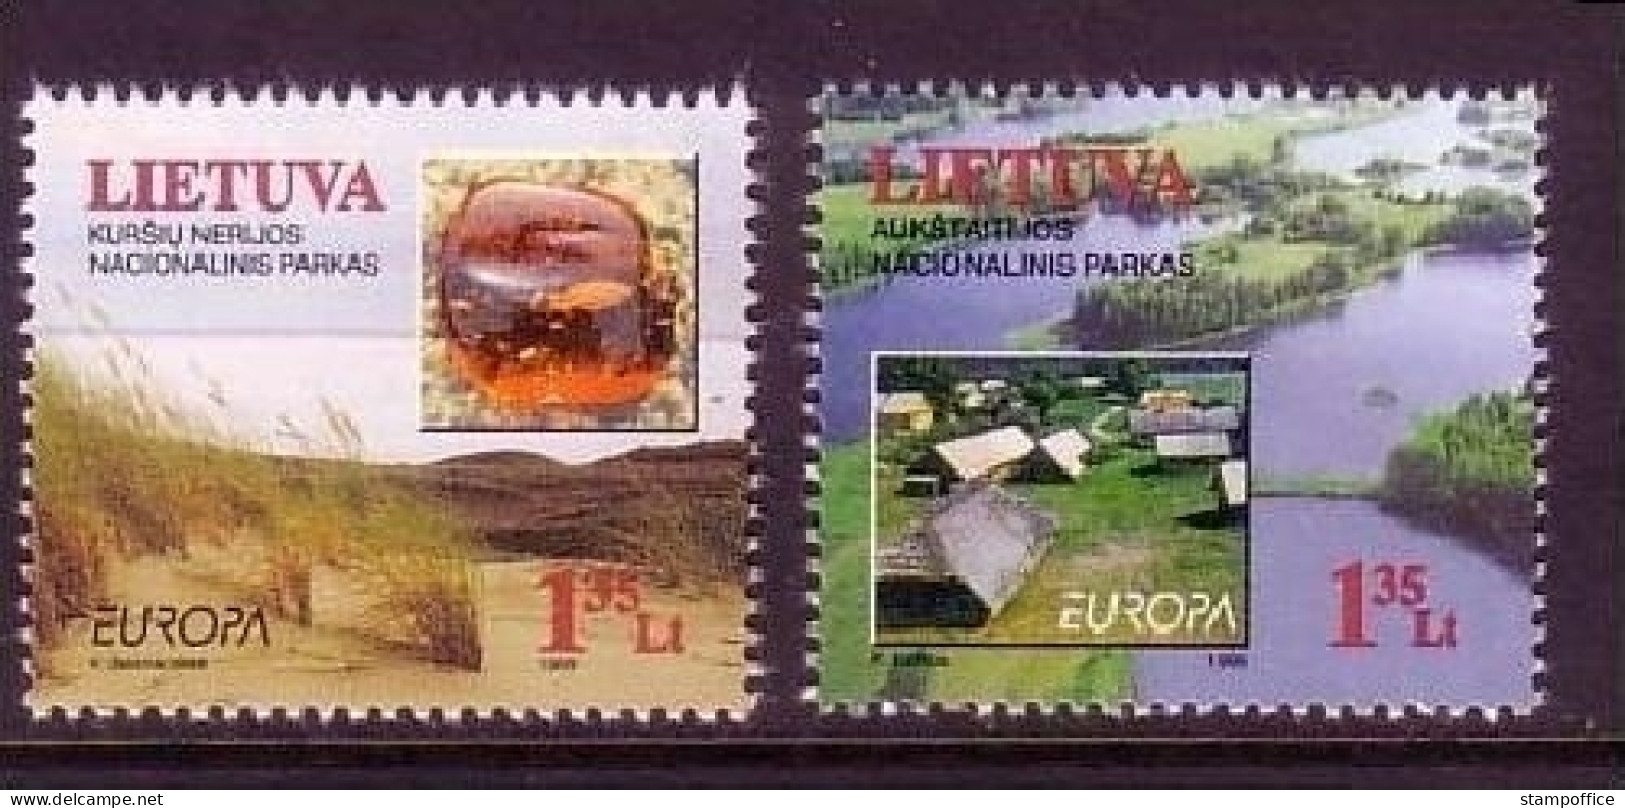 LITAUEN MI-NR. 693-694 POSTFRISCH(MINT) EUROPA 1999 NATUR- Und NATIONALPARKS - 1999